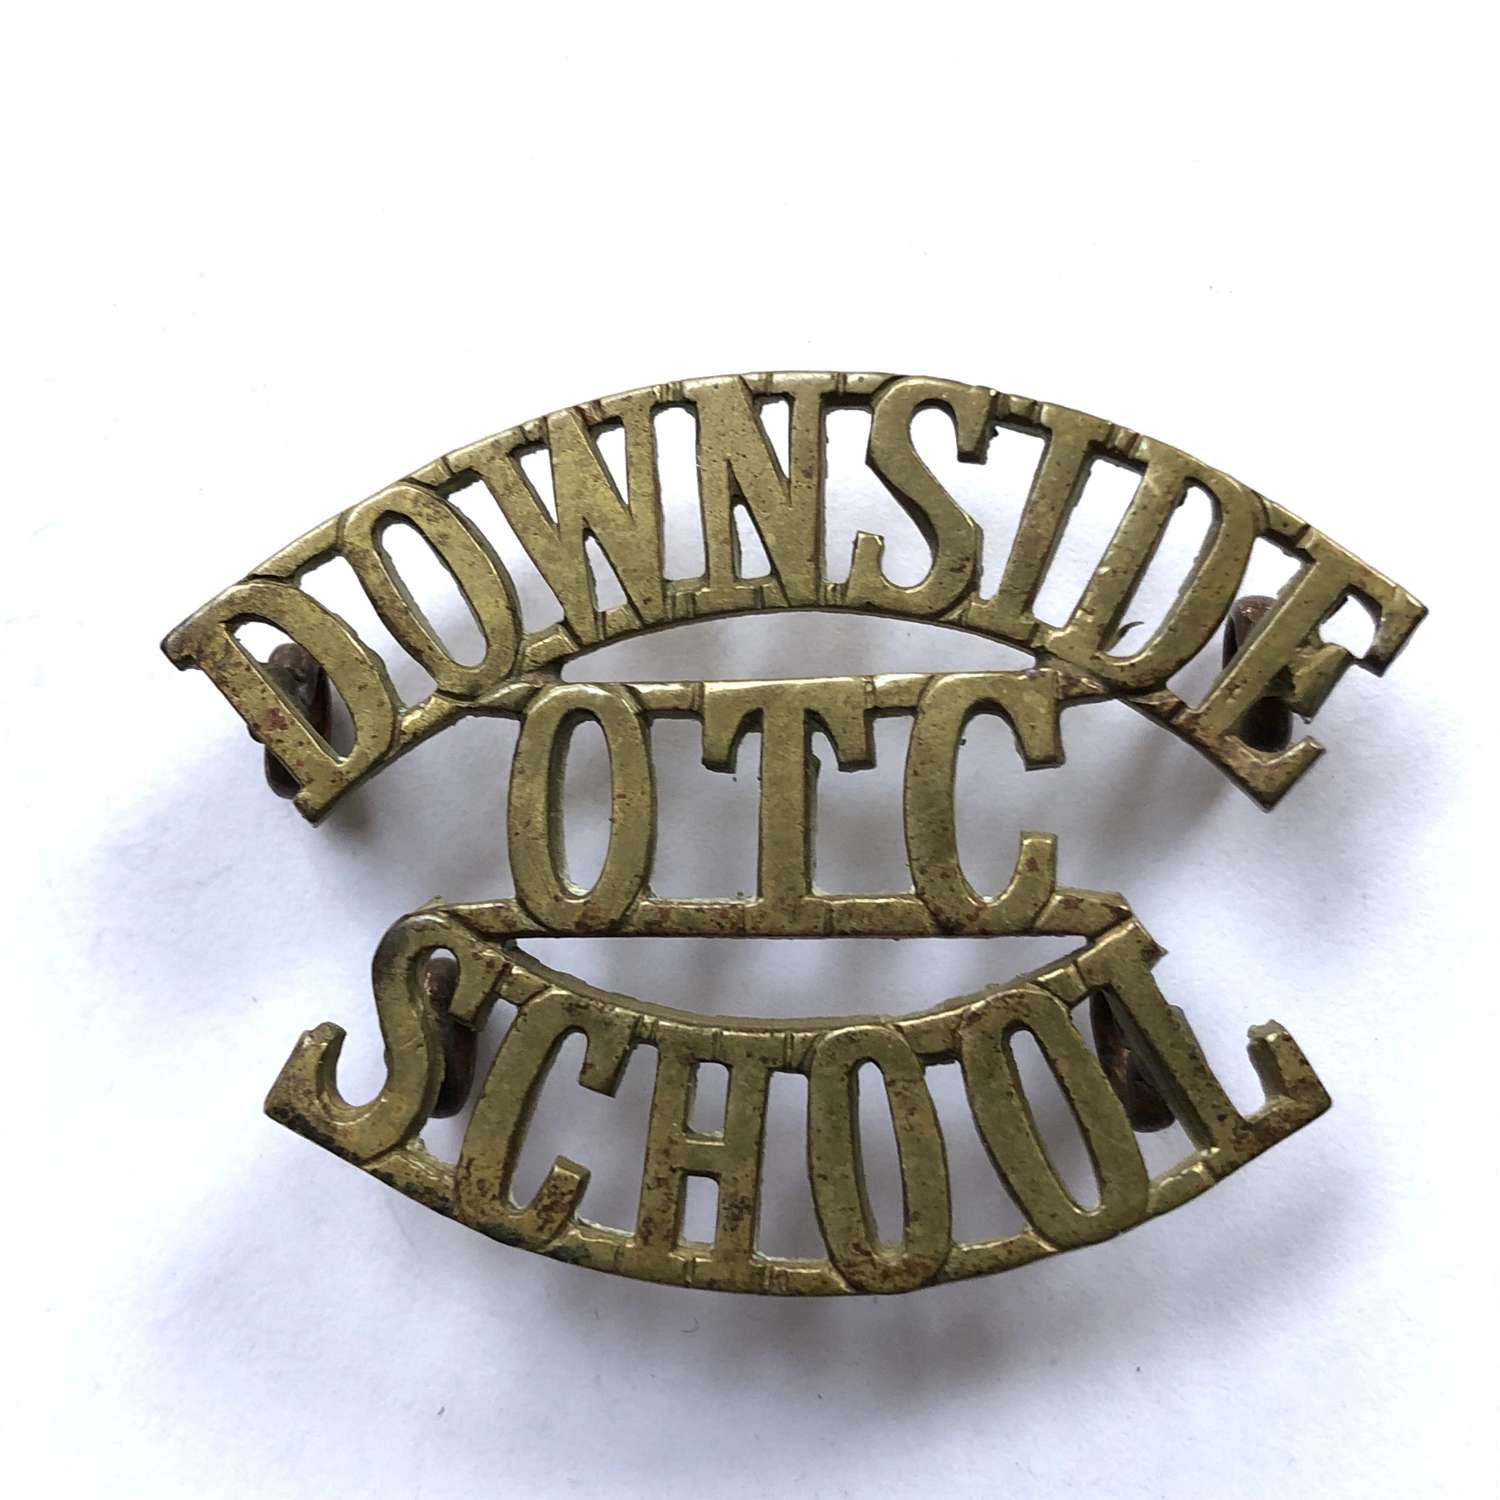 DOWNSIDE / OTC / SCHOOL Bath shoulder title circa 1908-40